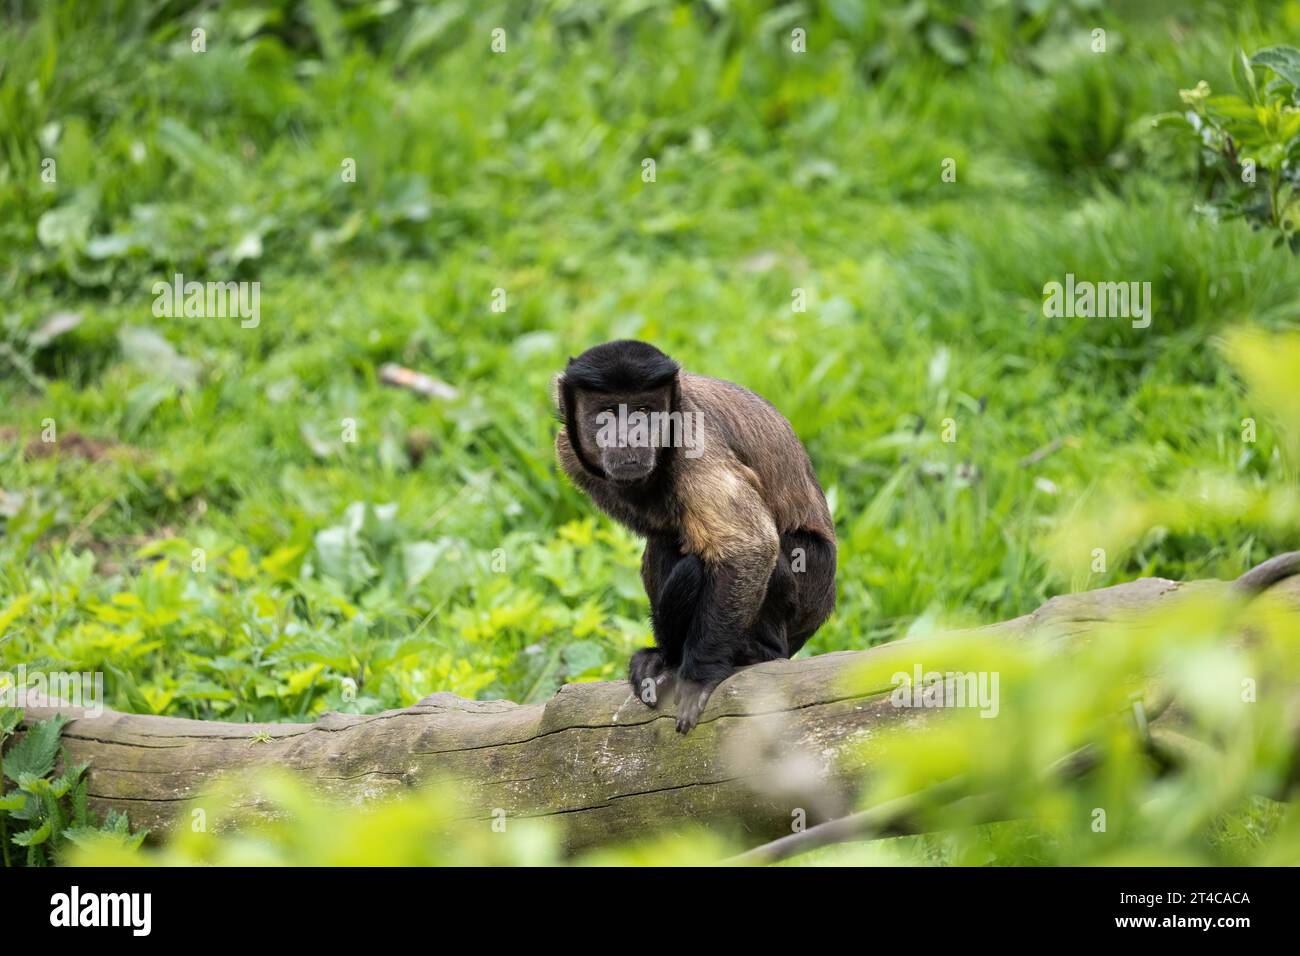 Capucin brun (Sapajus apella apella) sur tronc d'arbre mort, autres noms : capucins touffetés ou singe épingle. Primate du Nouveau monde dans la famille Cebidae, nativ Banque D'Images